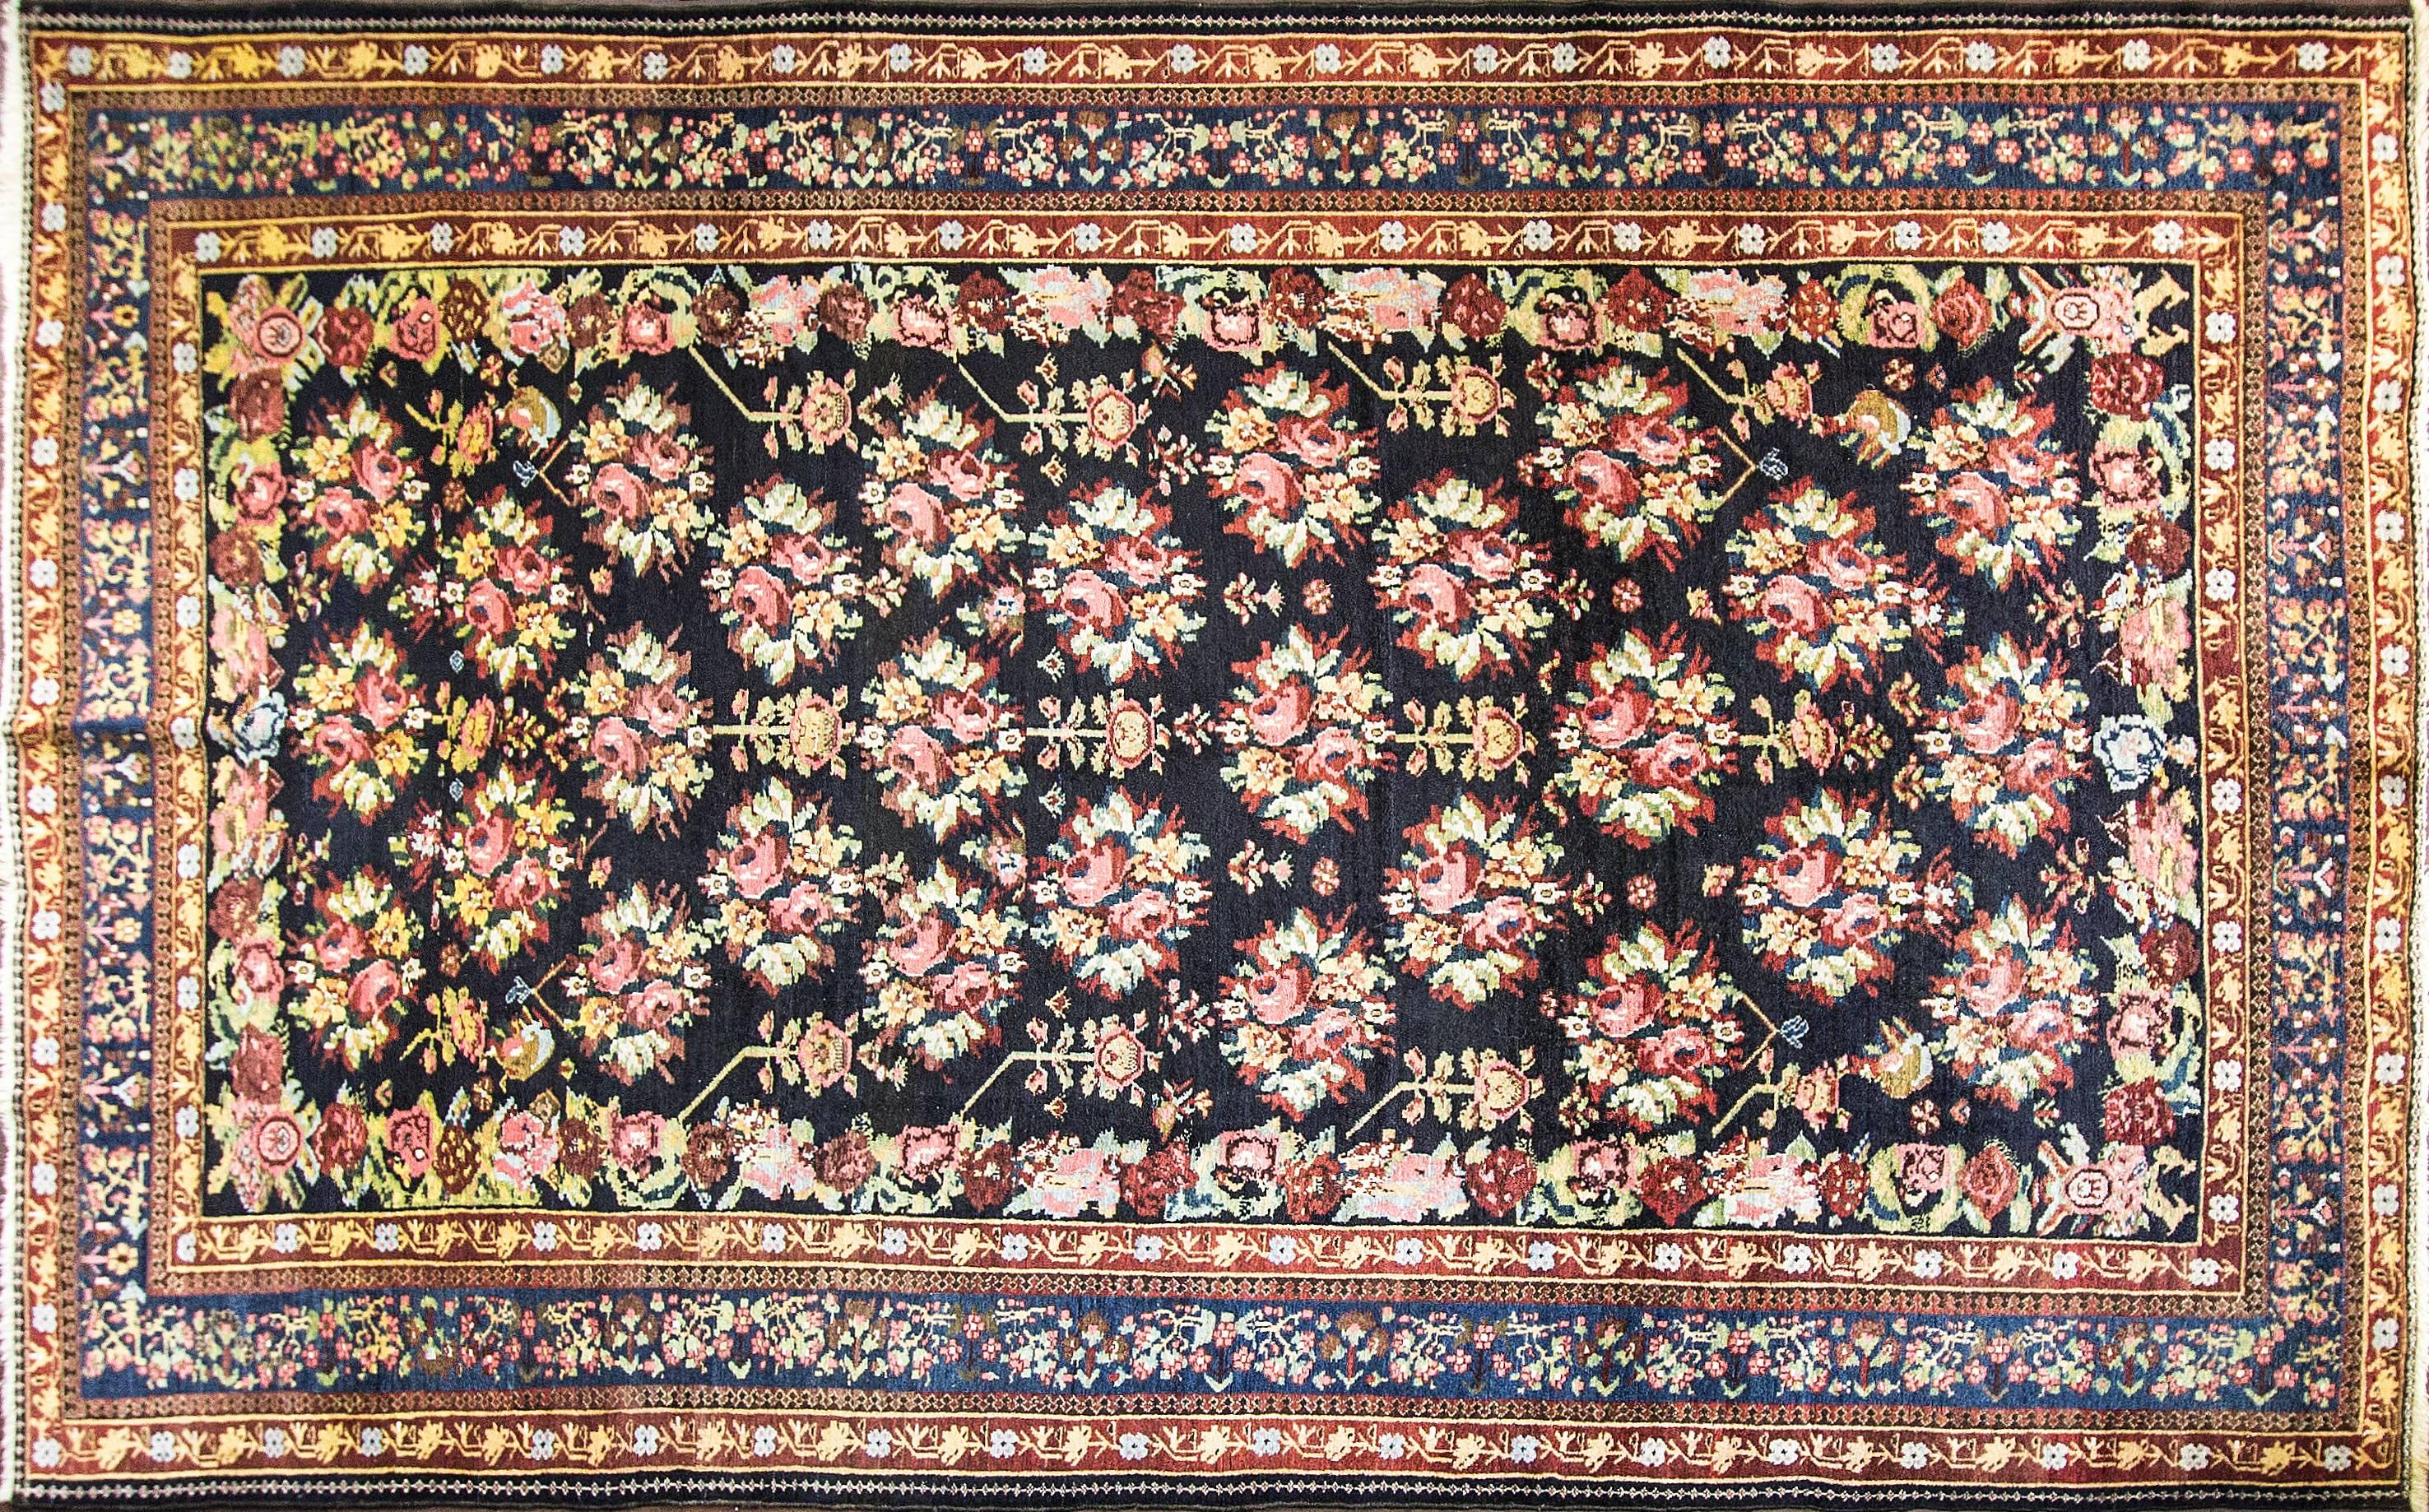 Bachtiari-Teppiche sind eine der wenigen Arten und Stile antiker Teppiche, die sowohl nomadisches Stammesdesign als auch städtisches Design antiker persischer Teppiche umfassen. Viele persische Bachtiari-Teppiche sind in der Tat Stammesstücke, die